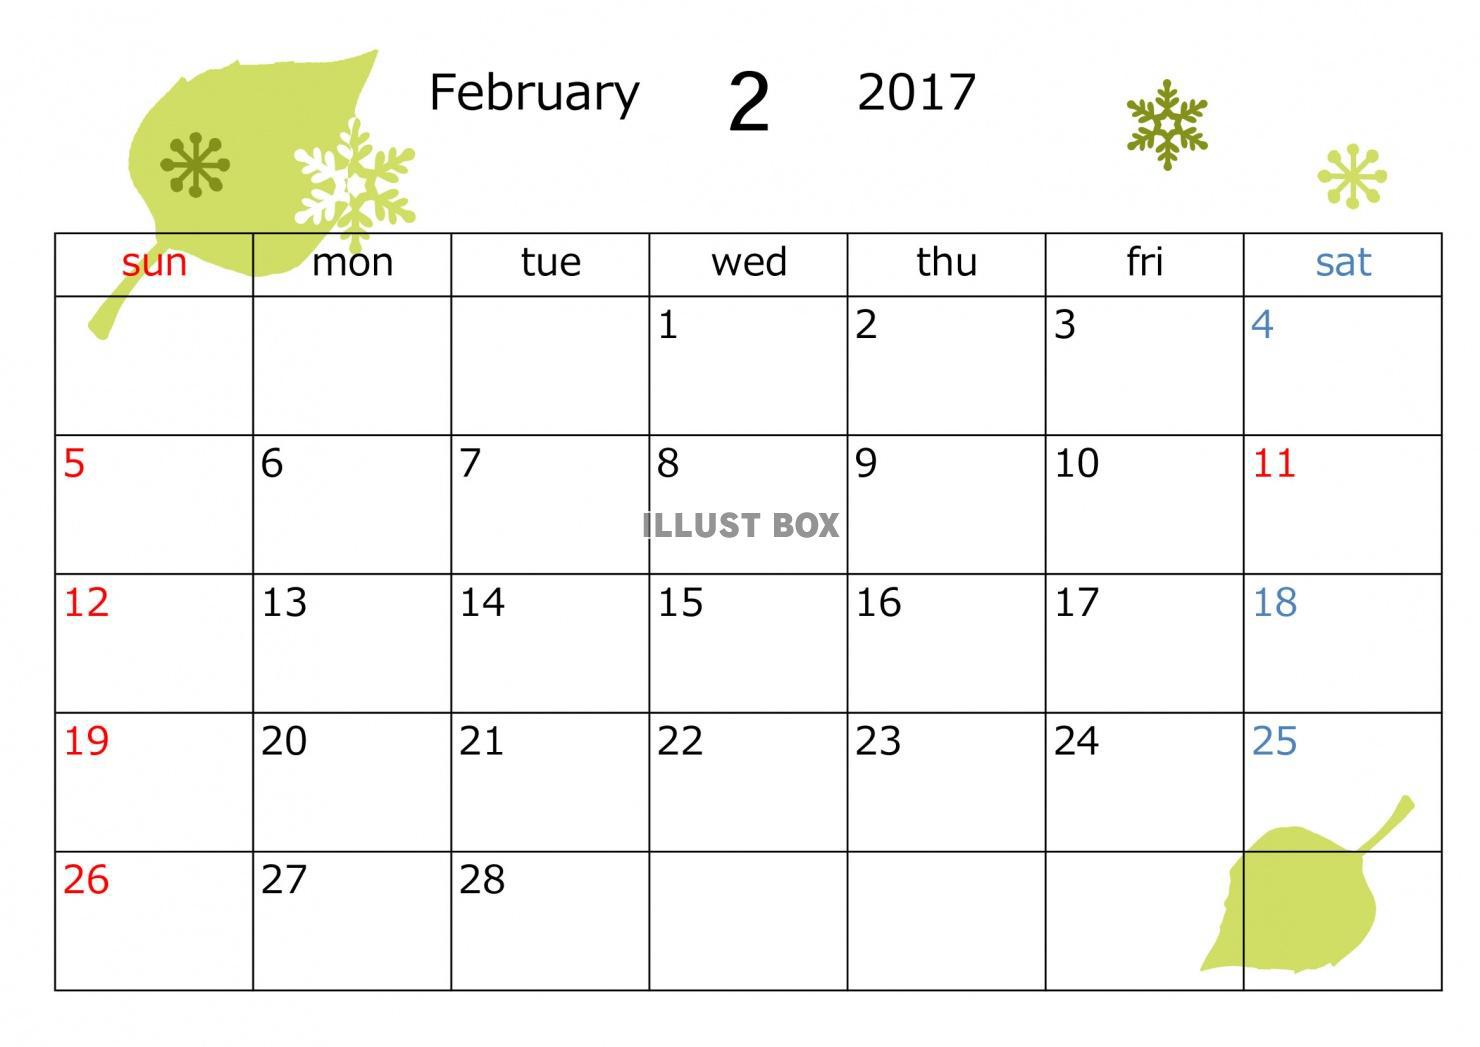 ２月はなぜ日数が少ないの